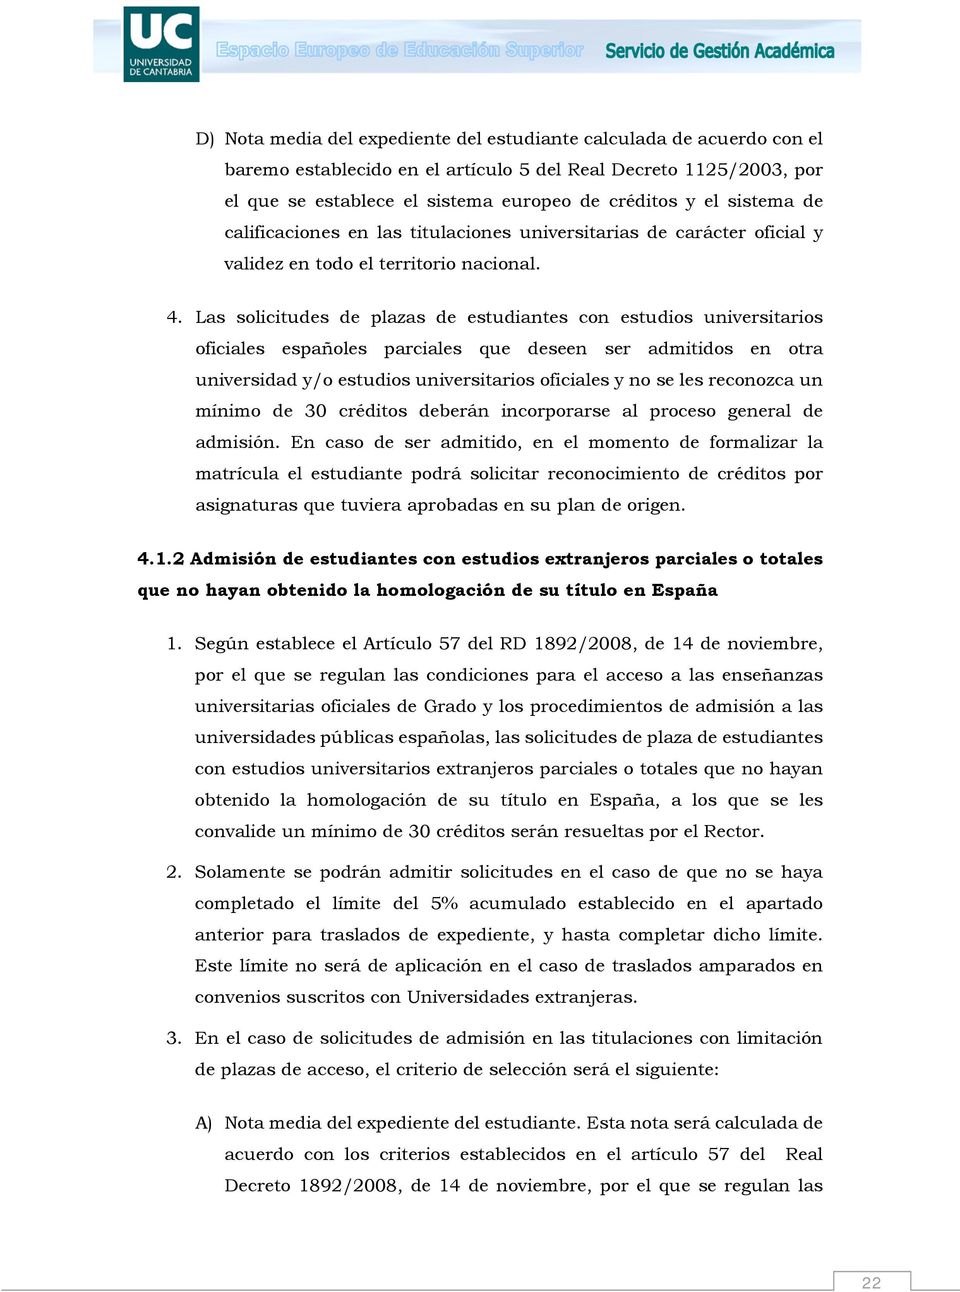 Las solicitudes de plazas de estudiantes con estudios universitarios oficiales españoles parciales que deseen ser admitidos en otra universidad y/o estudios universitarios oficiales y no se les